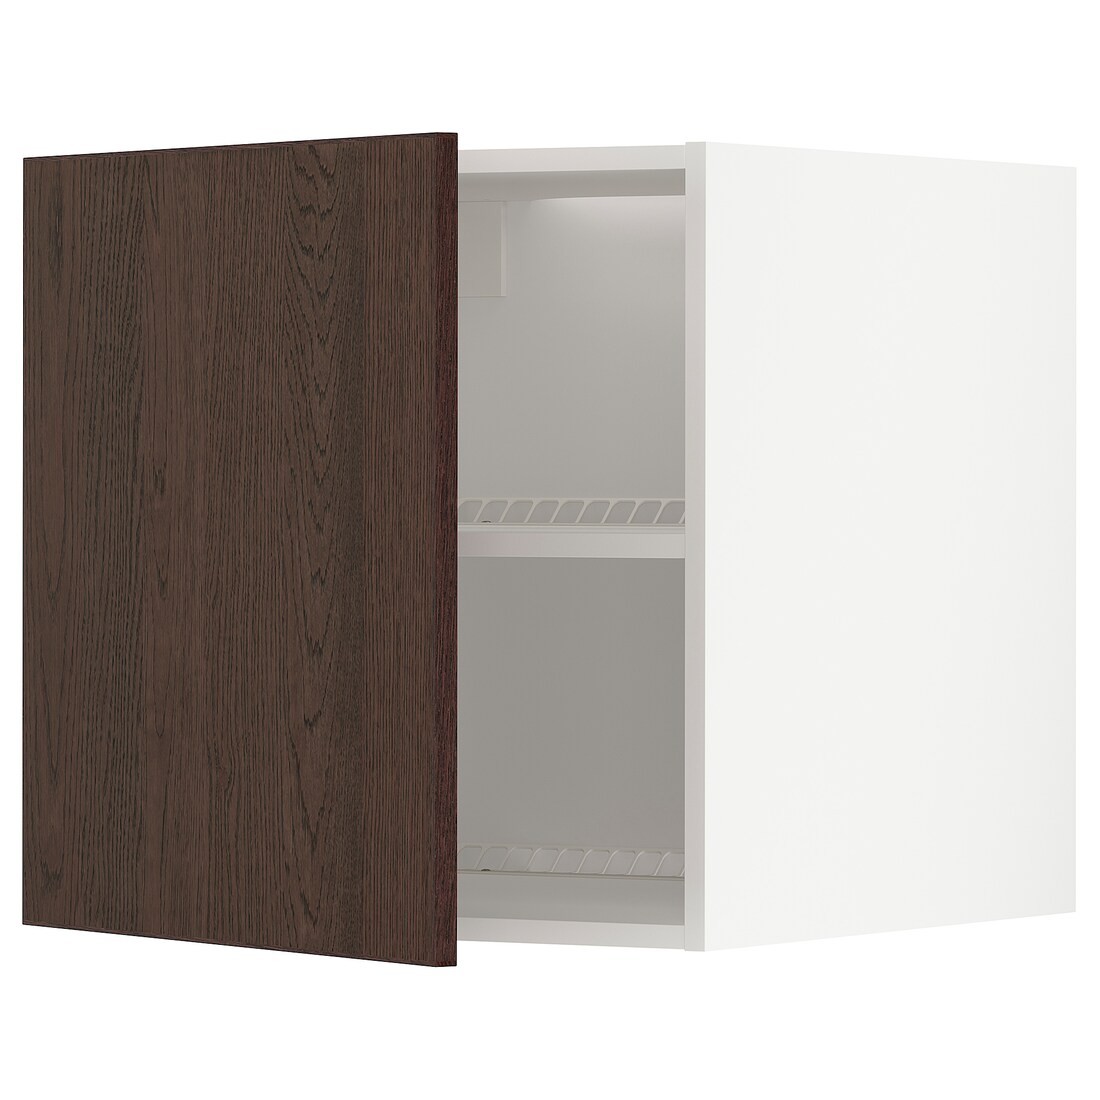 METOD МЕТОД Верхня шафа для холодильника / морозильника, білий / Sinarp коричневий, 60x60 см